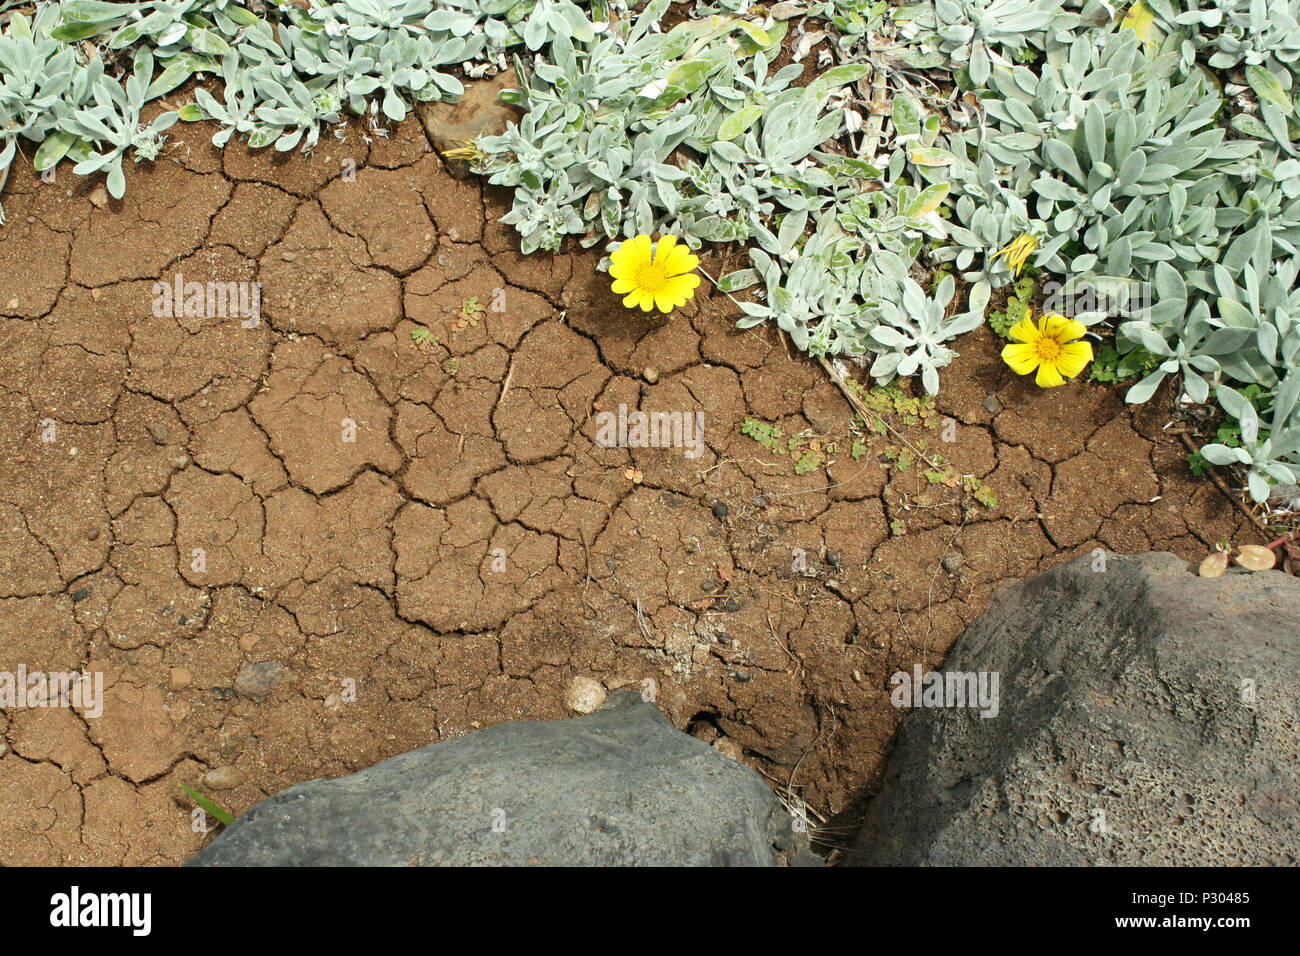 Cerca de tierra volcánica con arrastra con ramificación espontánea de la suculenta planta con flores amarillas Foto de stock